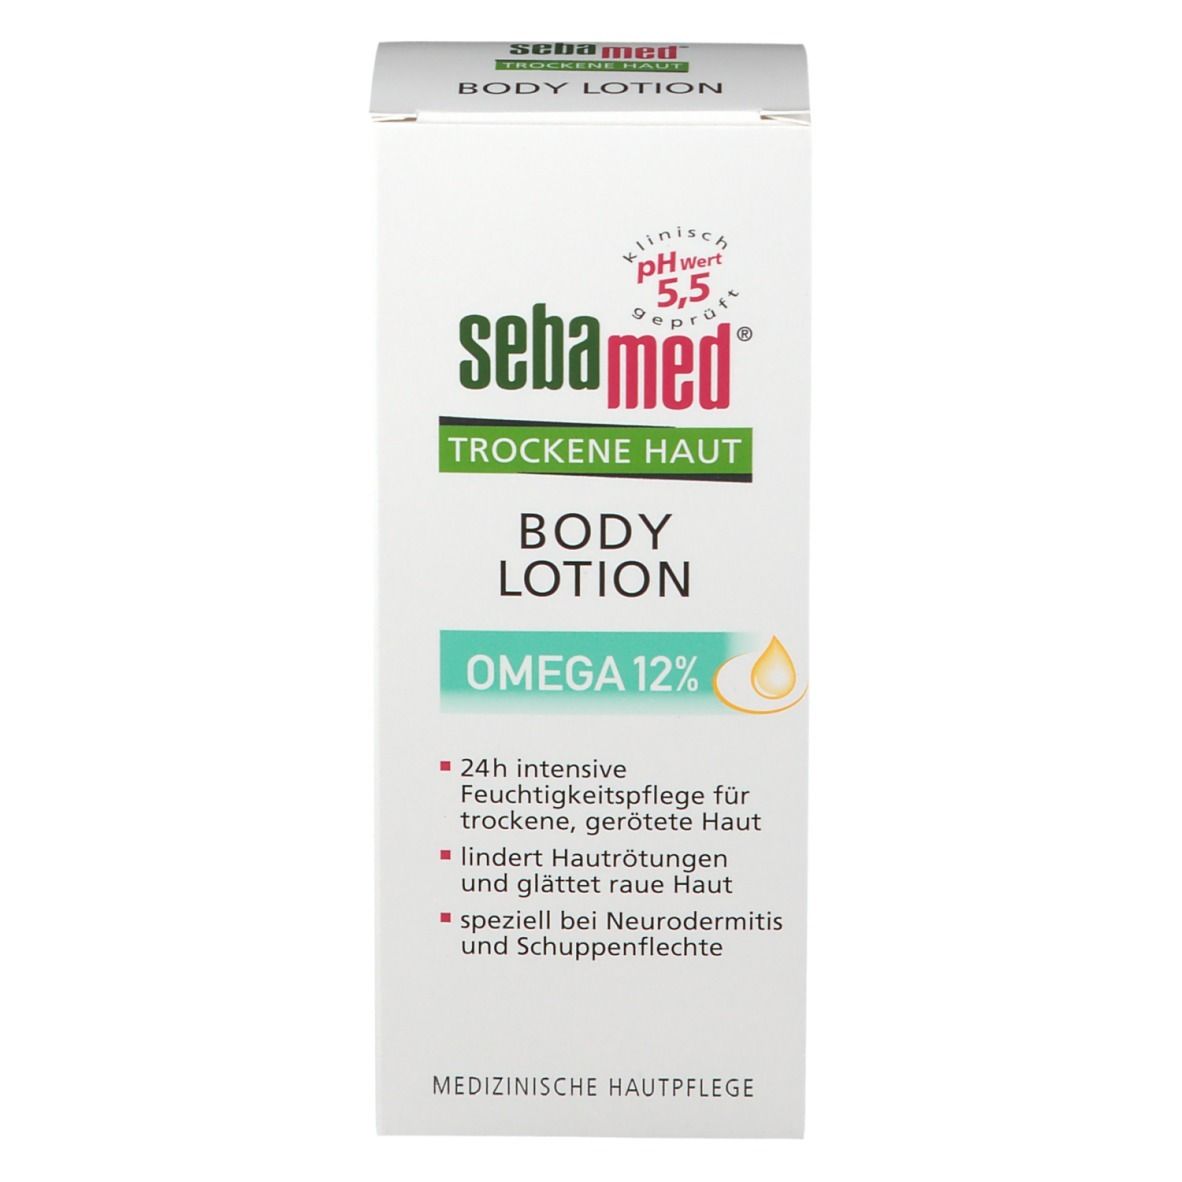 sebamed® Trockene Haut Body Lotion Omega 12%